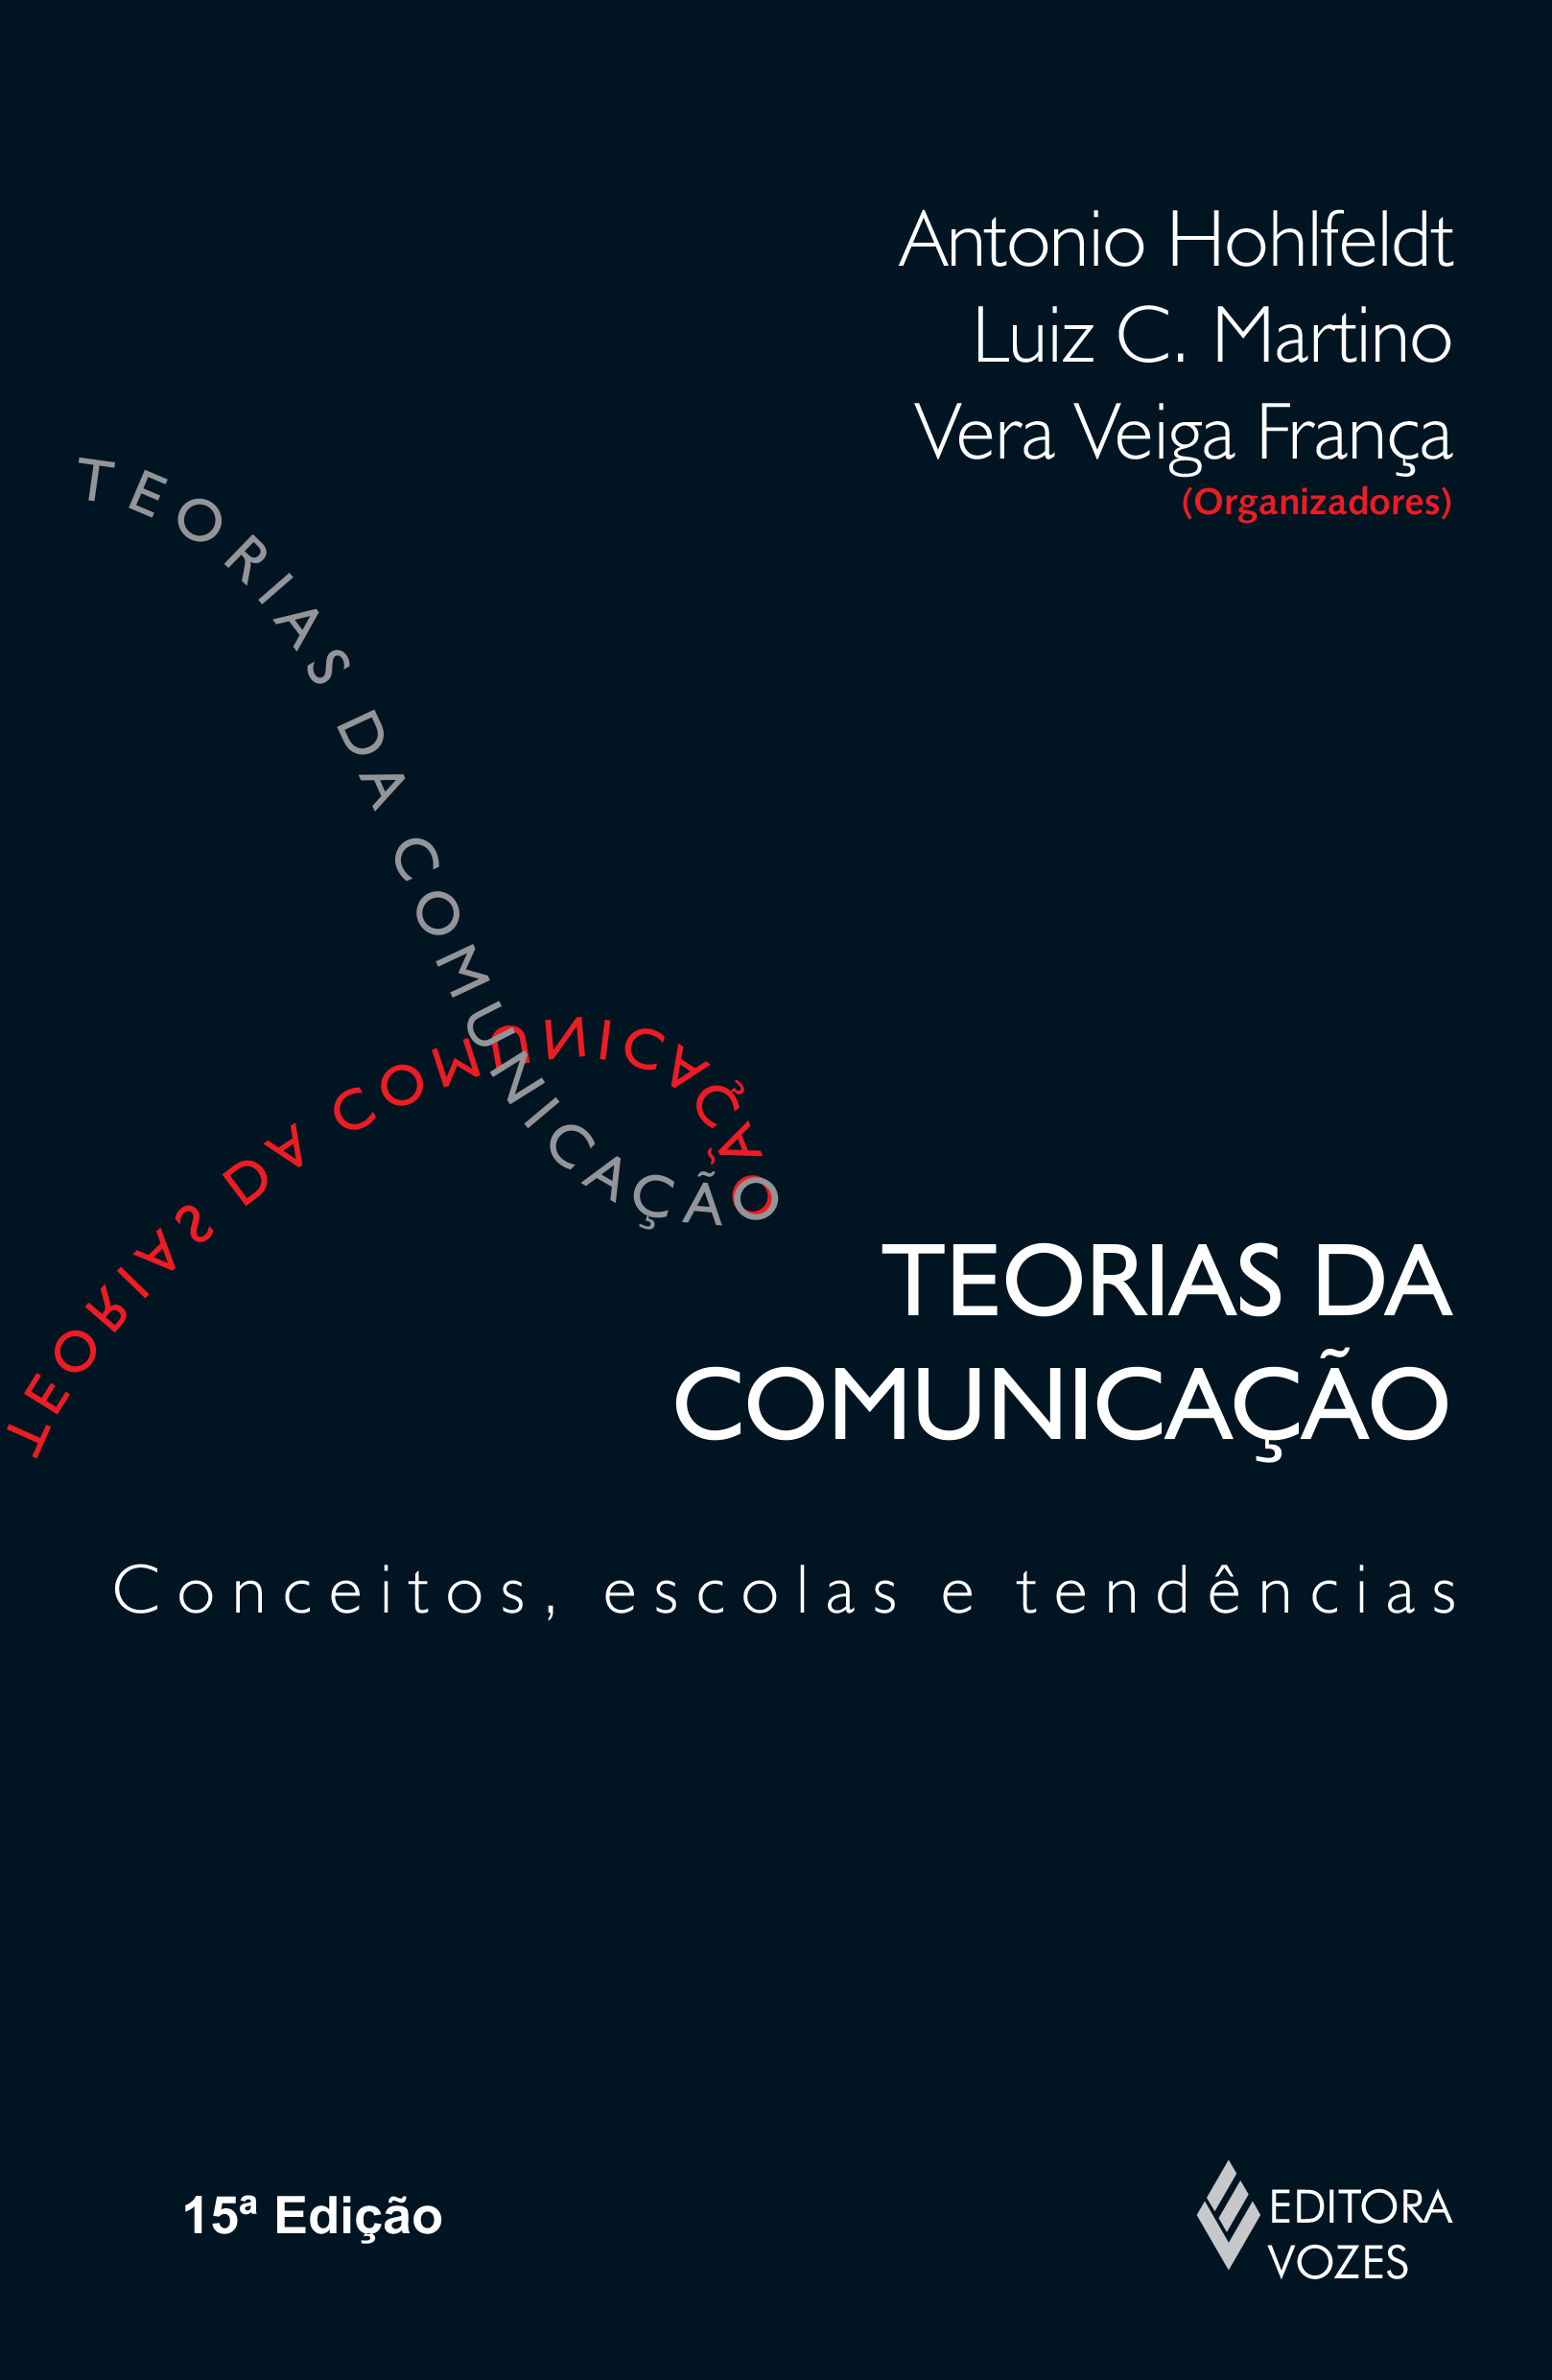 TEORIAS DA COMUNICACAO - CONCEITOS, ESCOLAS E TENDENCIAS